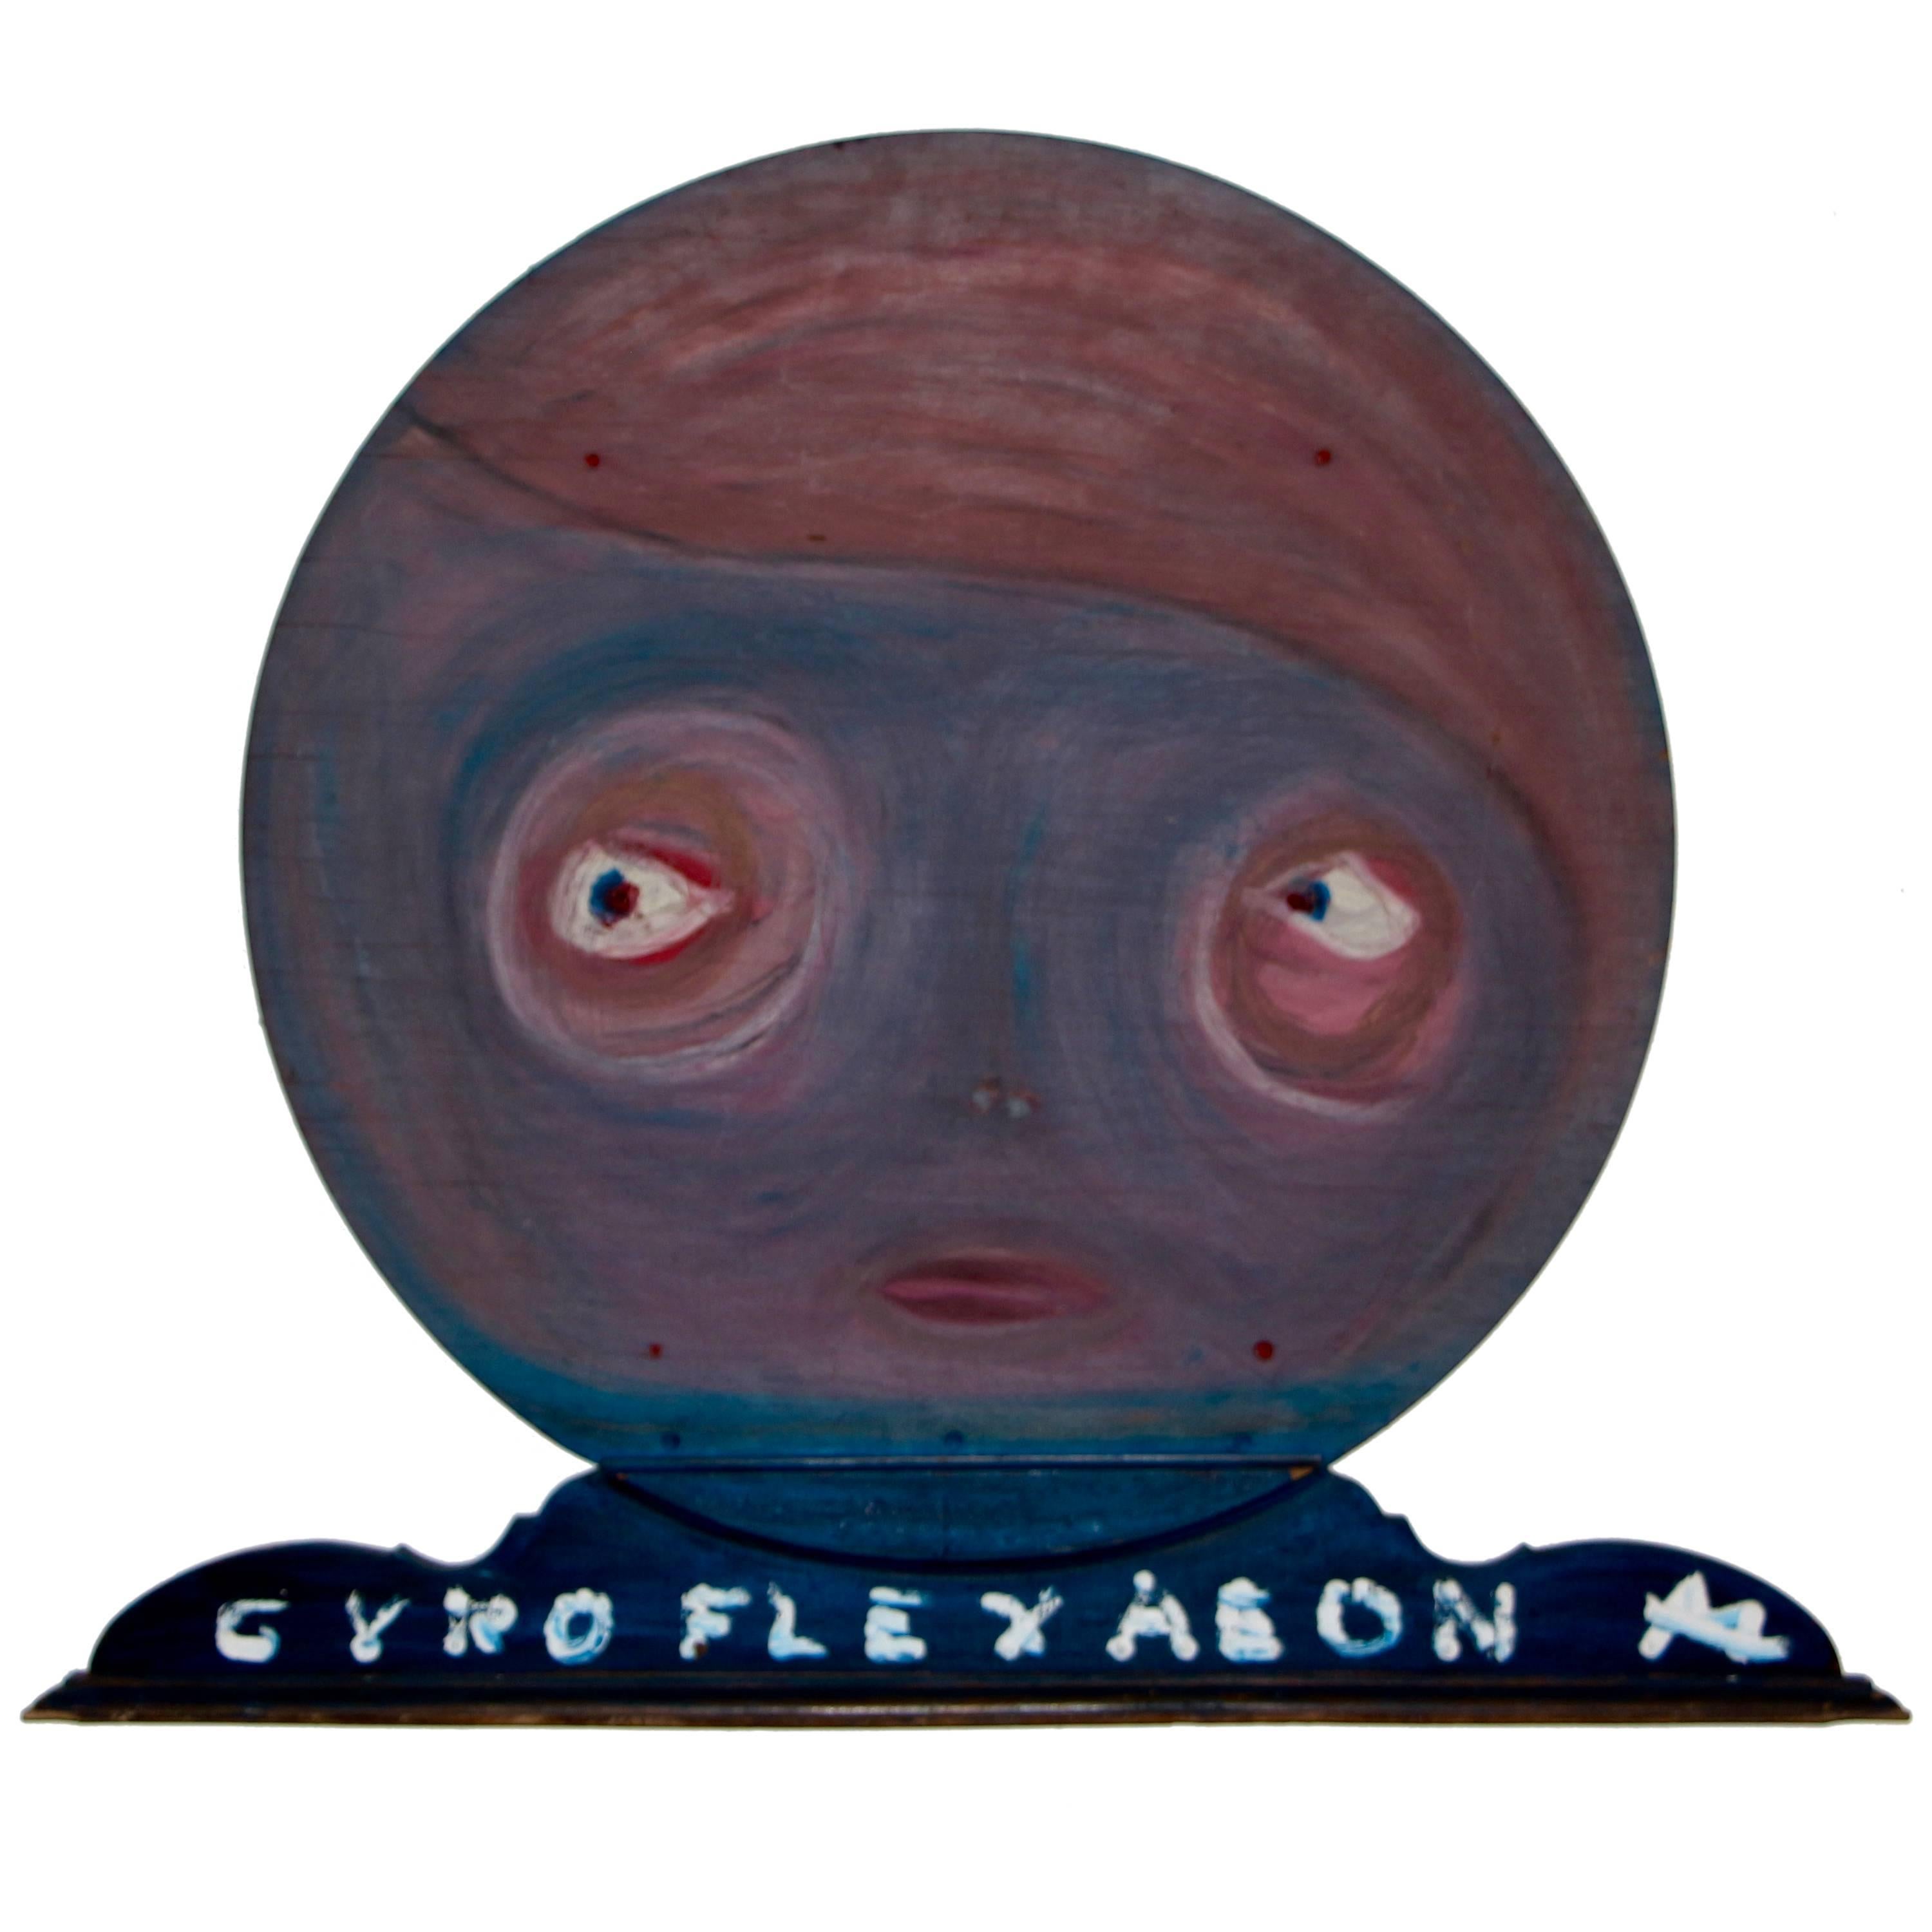 Gyroflexaeon-Wandskulptur eines bekannten Künstlers aus Woodstock im Angebot